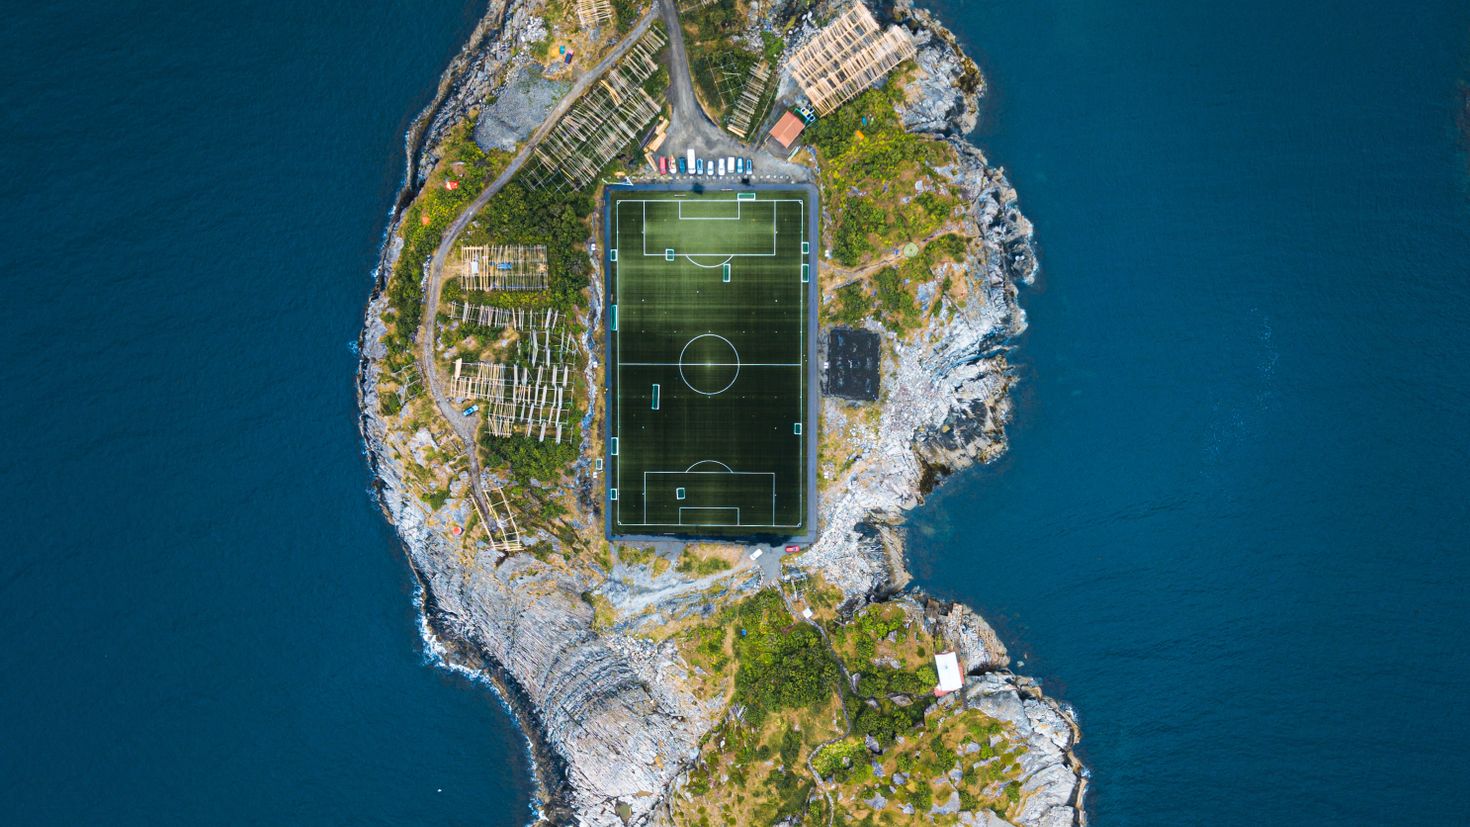 Стадион на острове. Город остров. Остров вид сверху. Футбольное поле на острове.